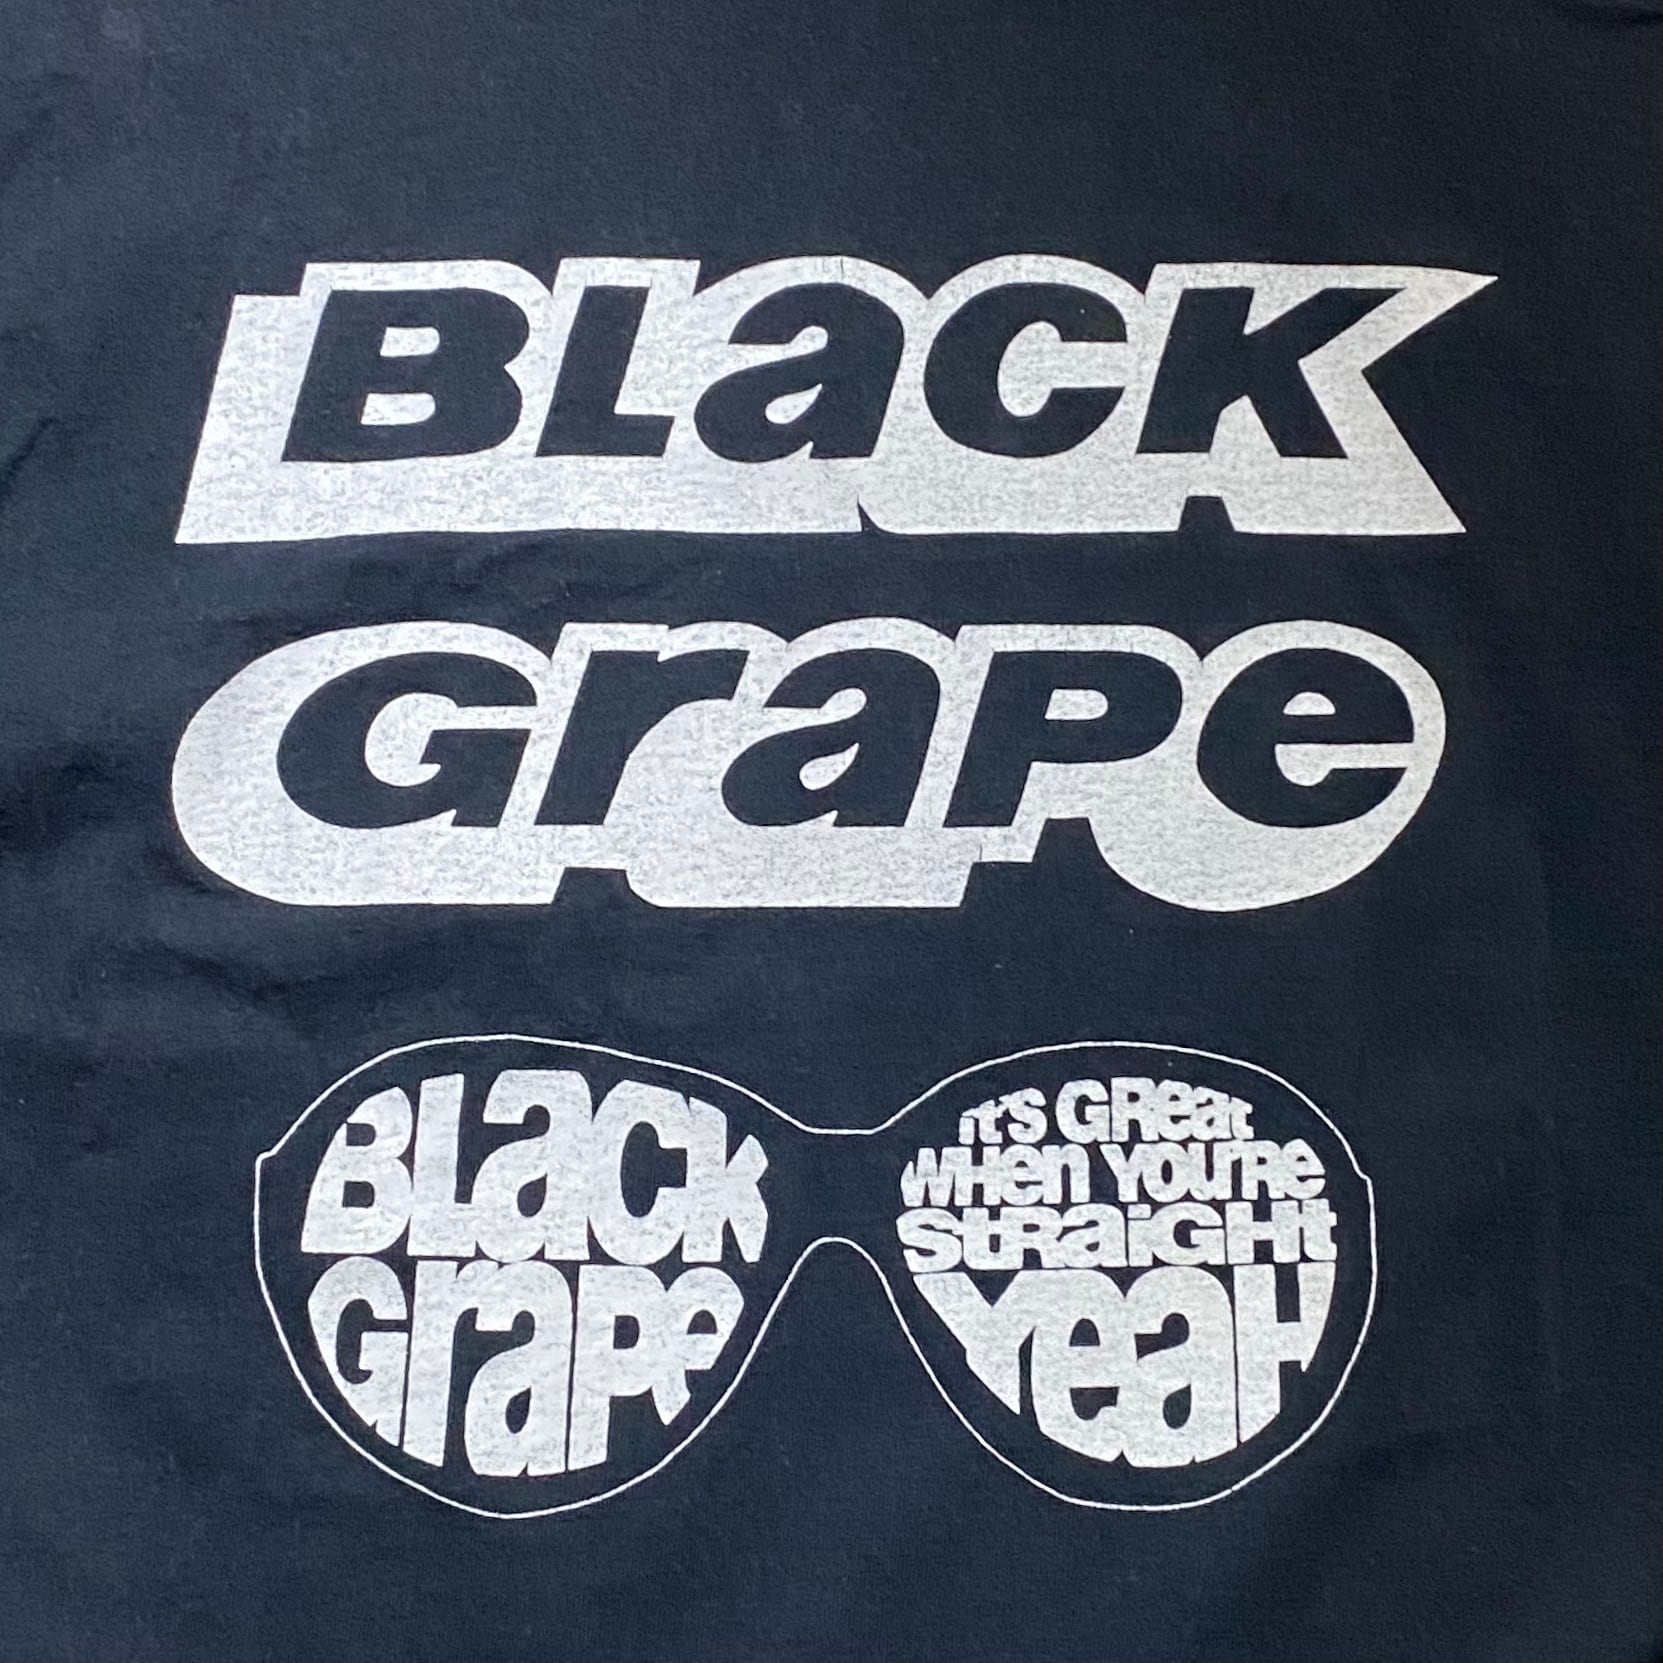 black grape ブラックグレープ tシャツ バンドT ヴィンテージ